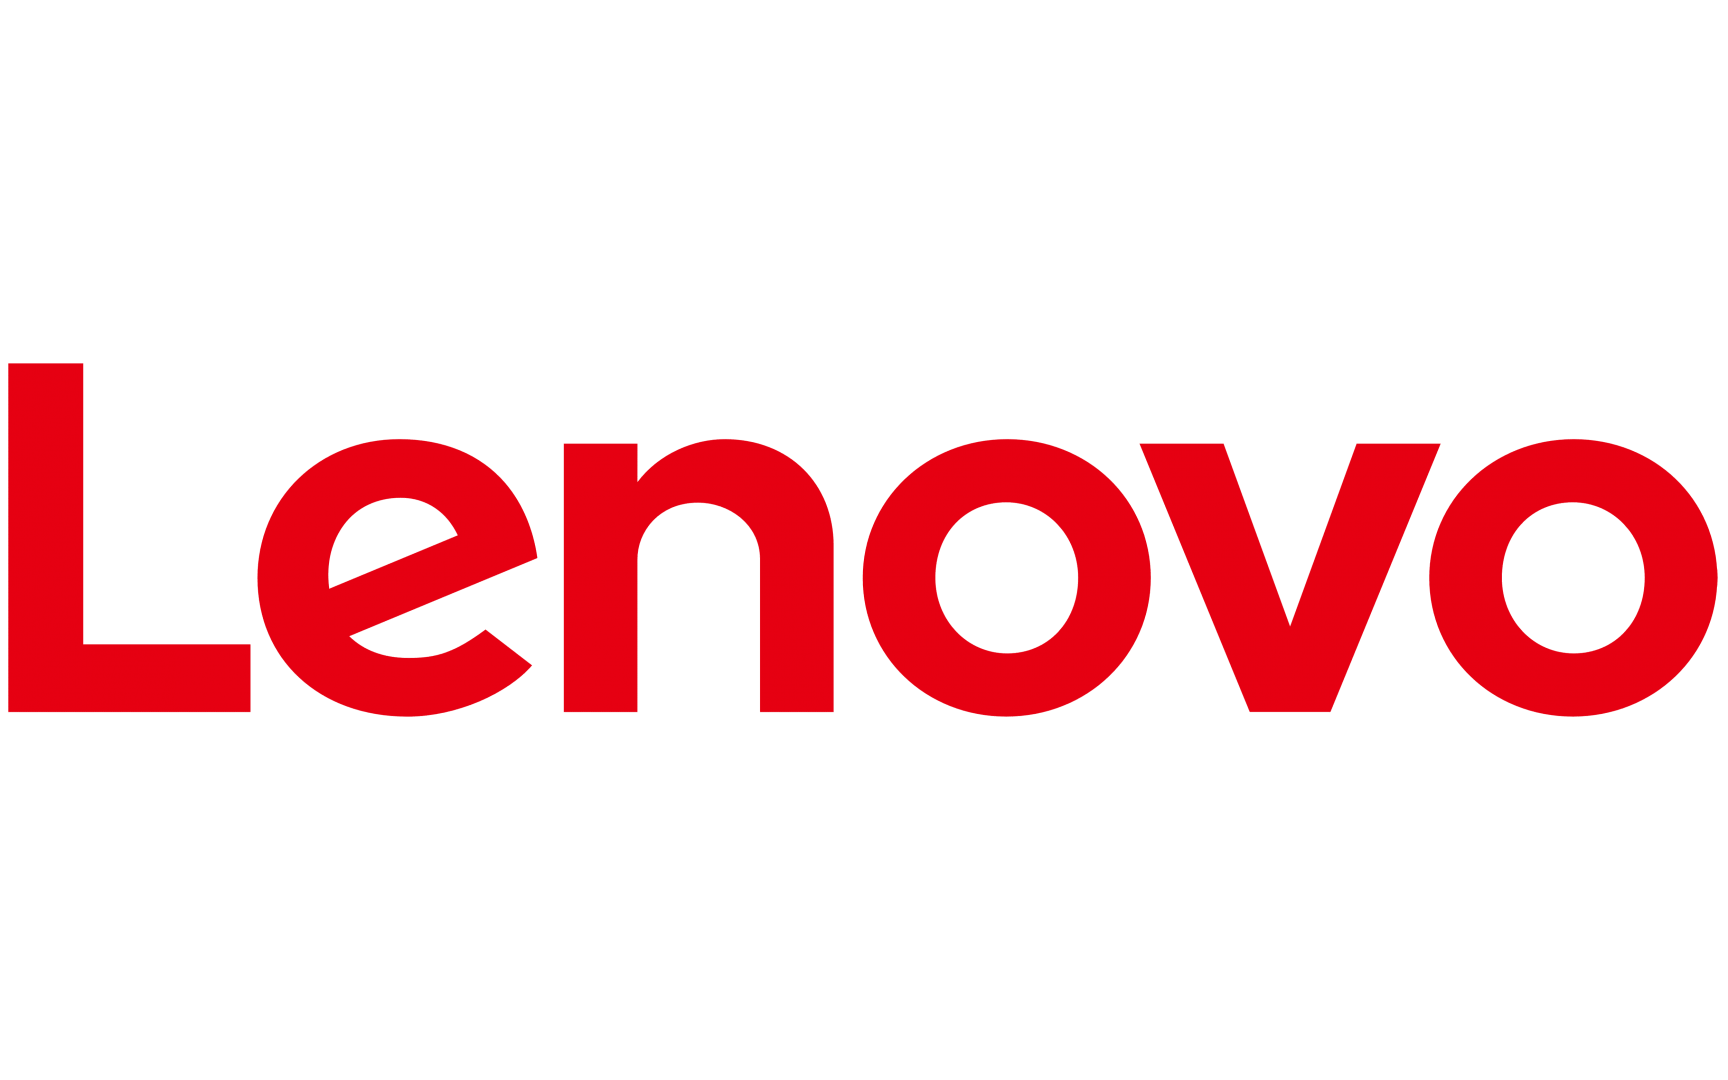 EXTENSIE garantie notebook LENOVO, 1 an, pt produs nou